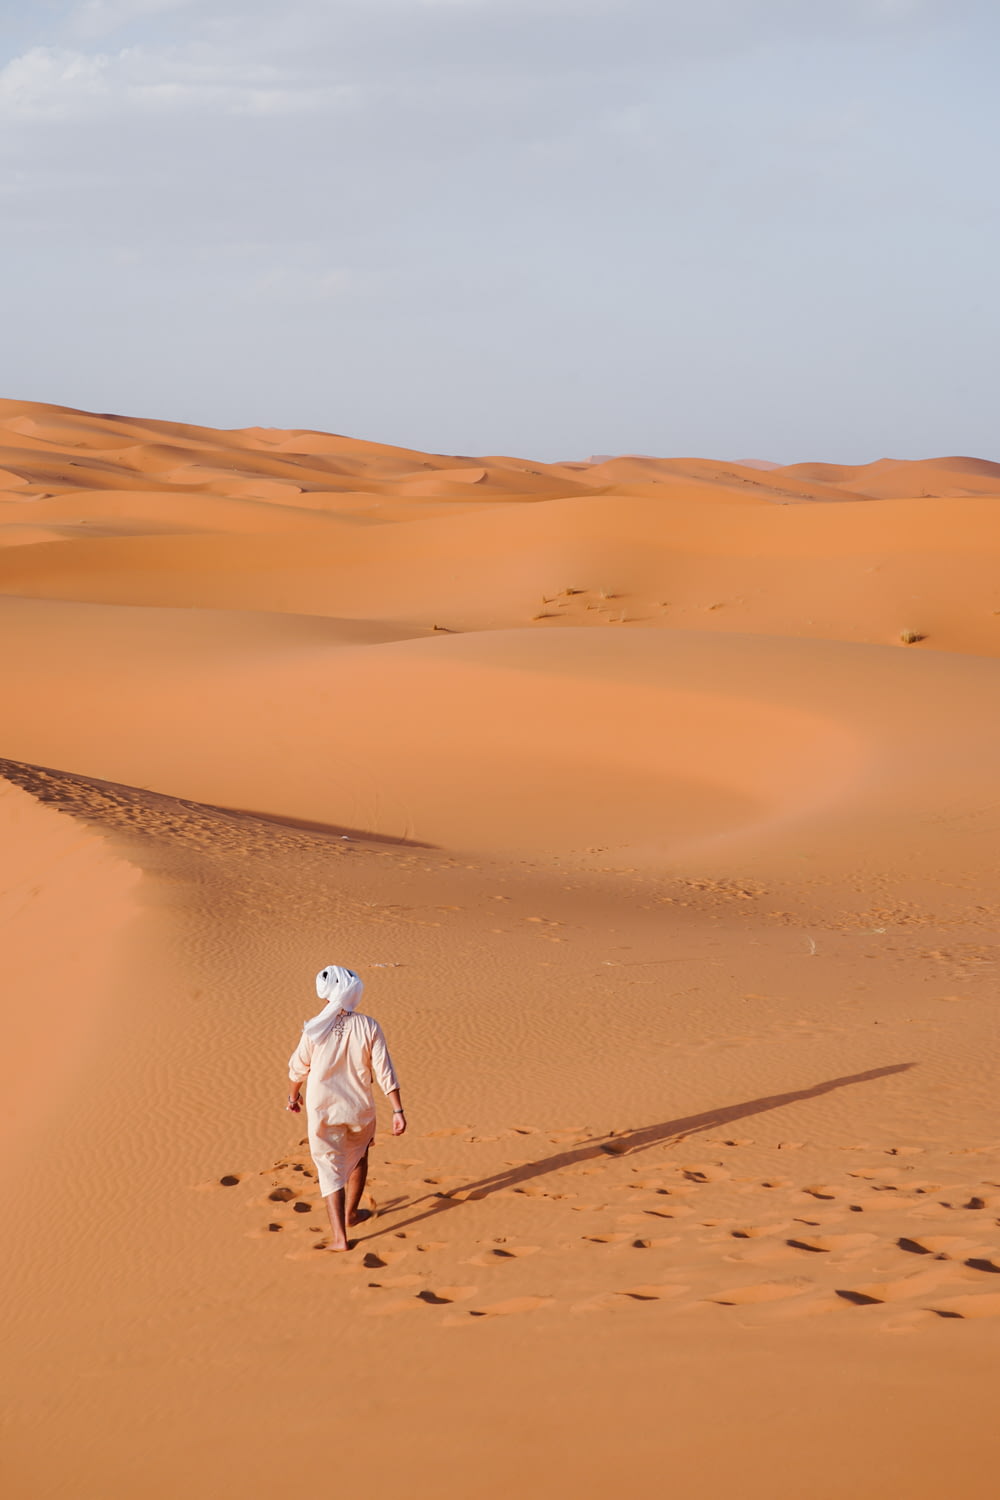 a person walking across a sandy field